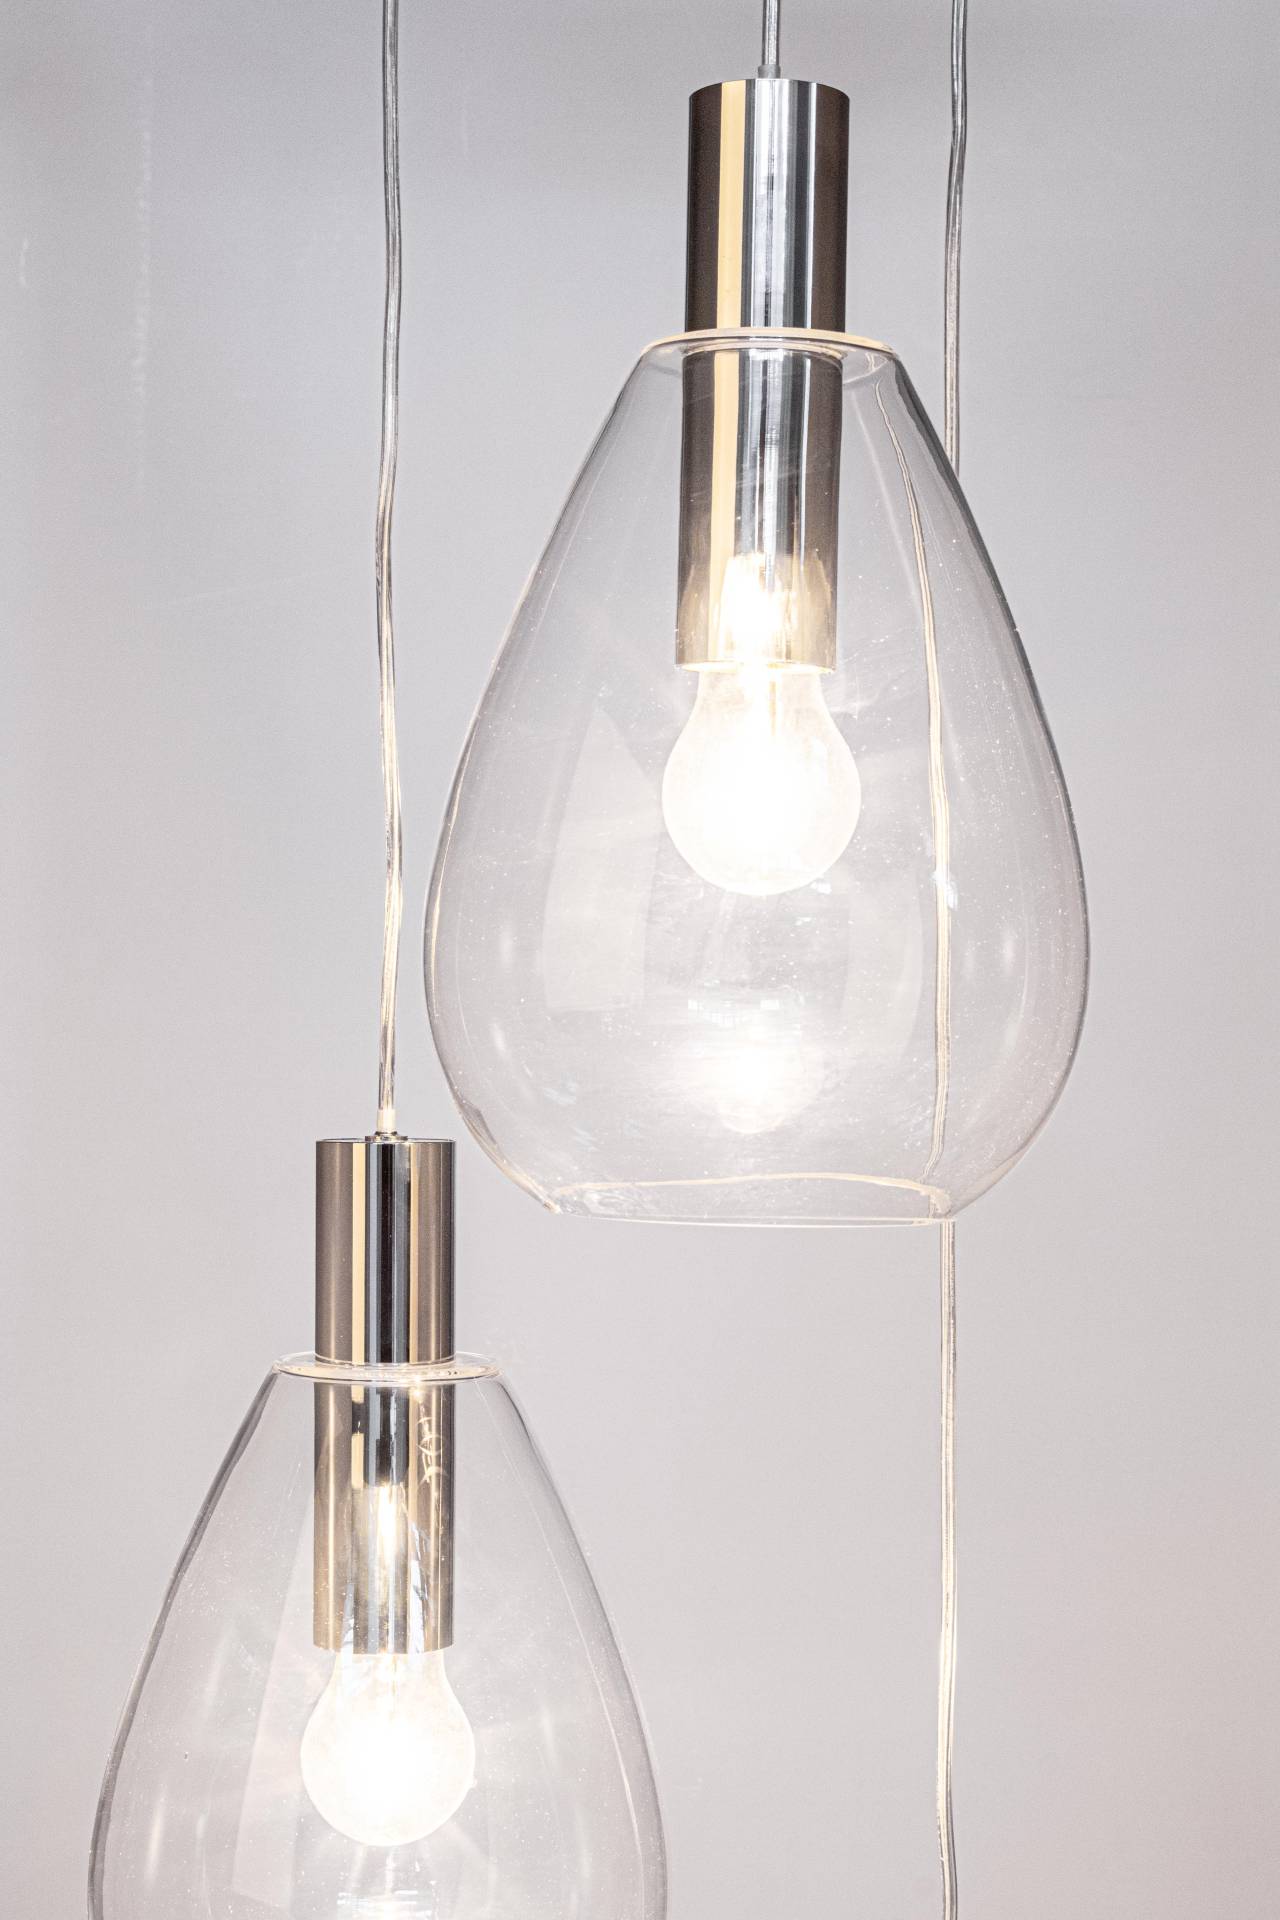 Die Hängeleuchte Glaring überzeugt mit ihrem modernen Design. Gefertigt wurde sie aus Metall, welches einen silberne Farbton besitzt. Die Lampenschirme sind aus Glas und sind klar. Die Lampe besitzt eine Höhe von 160 cm.